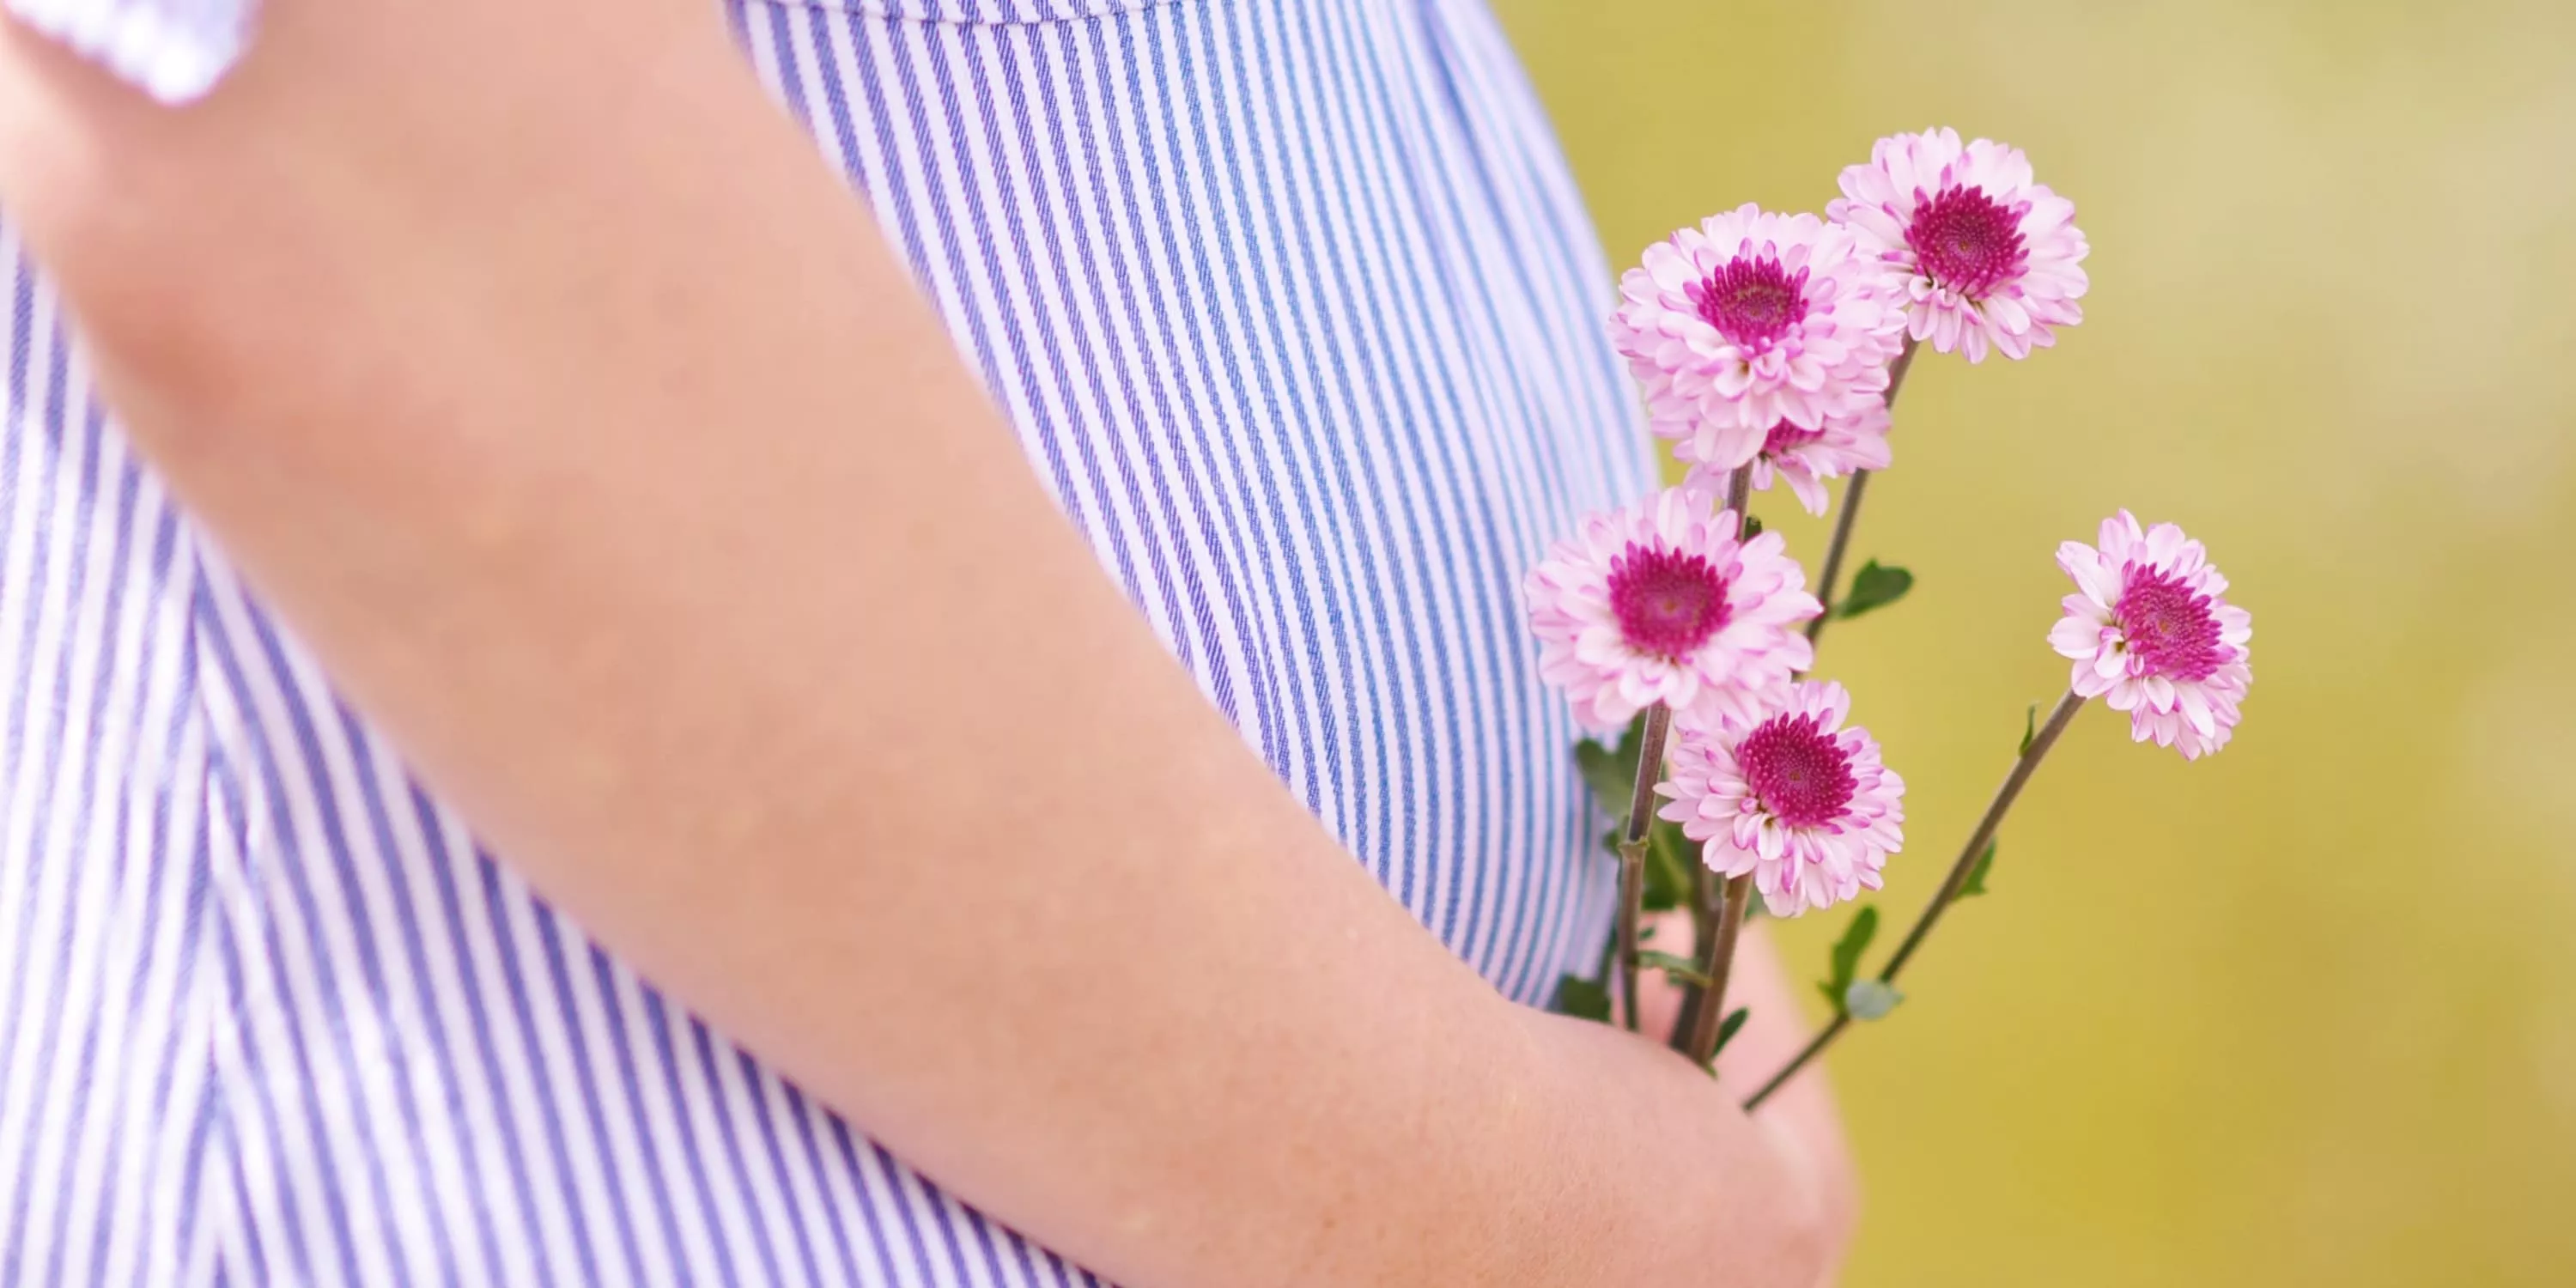 Részlet: virágot tartó terhes nő hasa.